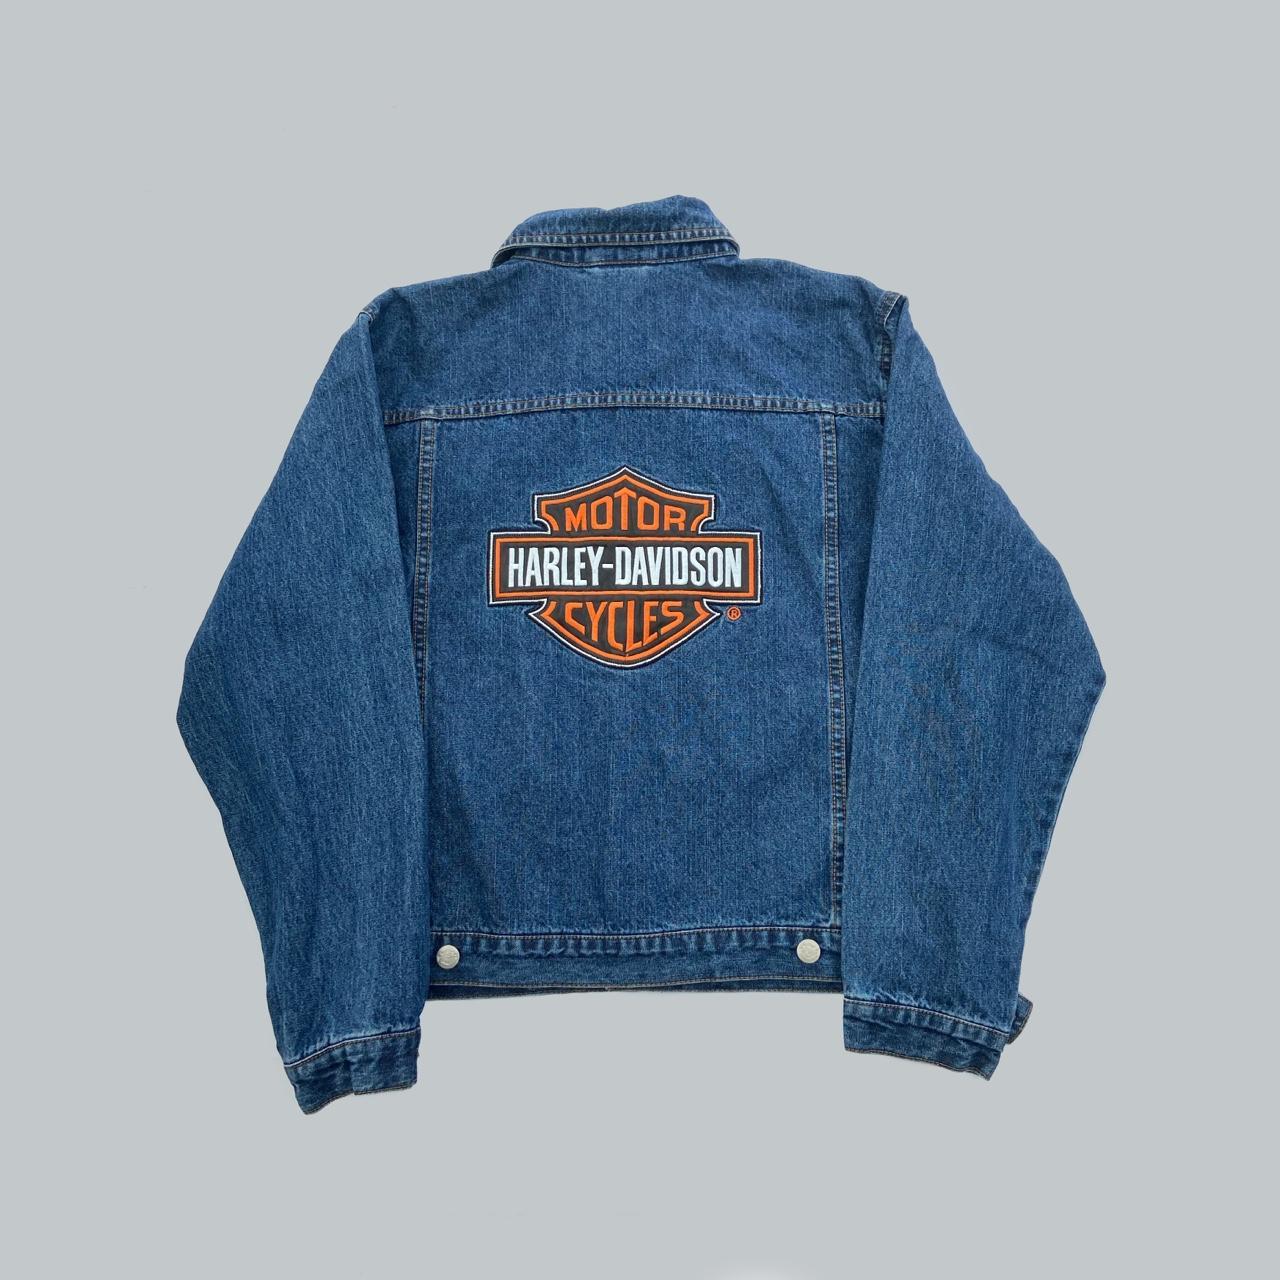 Harley Davidson denim jacket Mid blue with the... - Depop